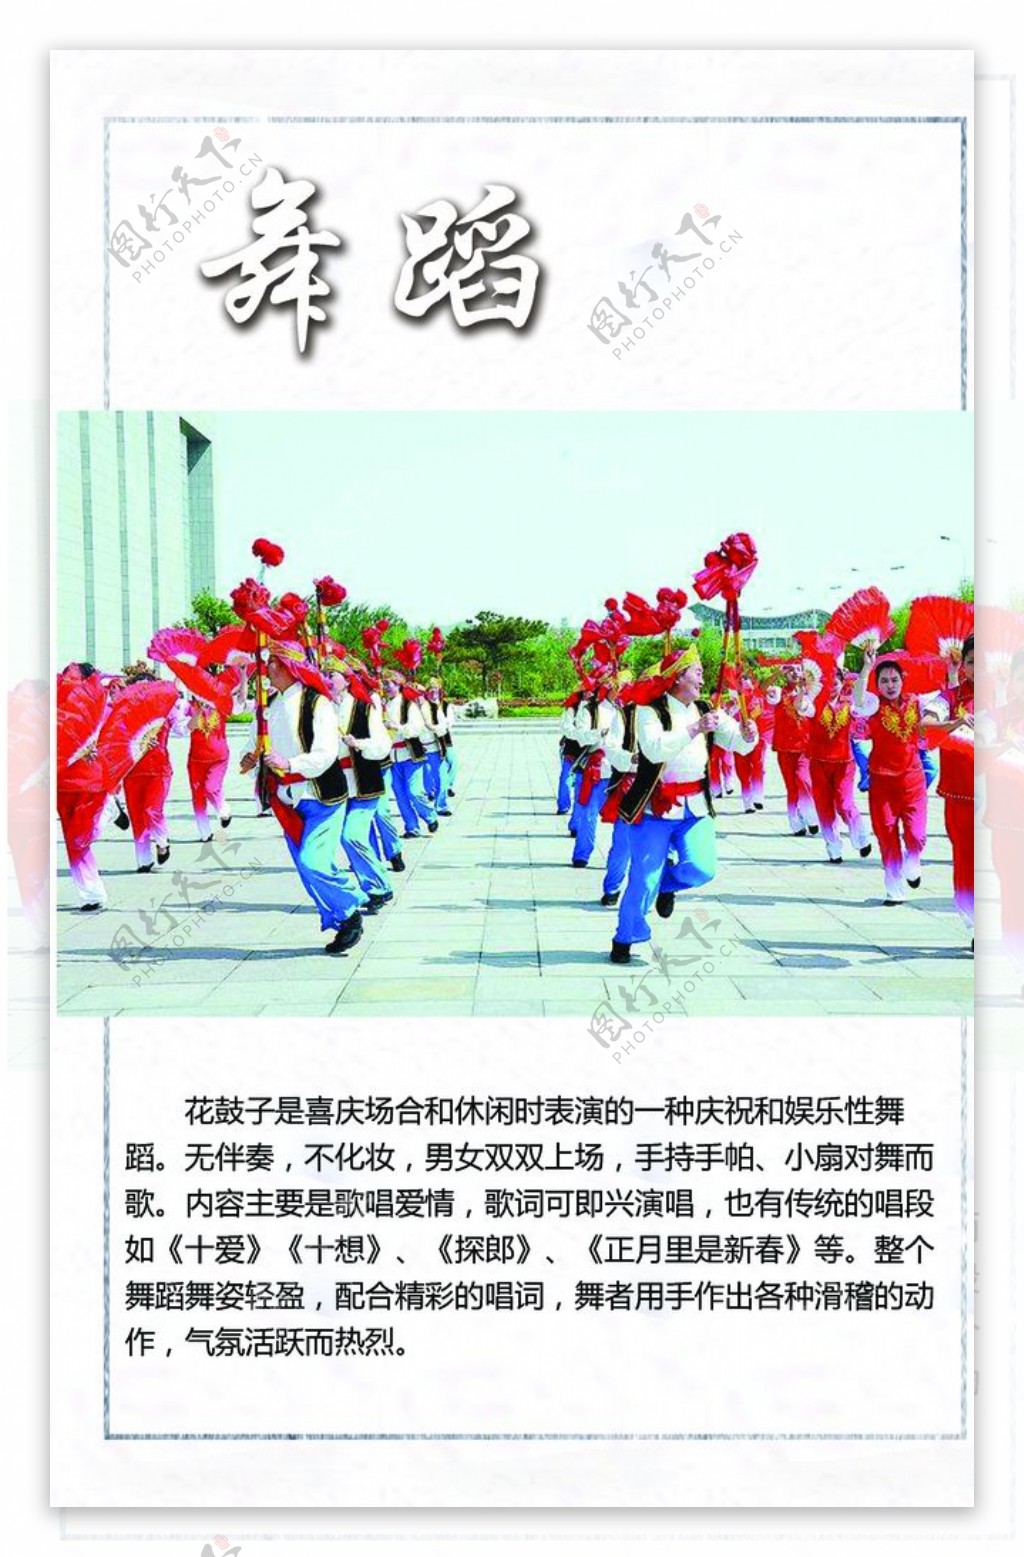 扇子舞舞蹈民族特色朝鲜